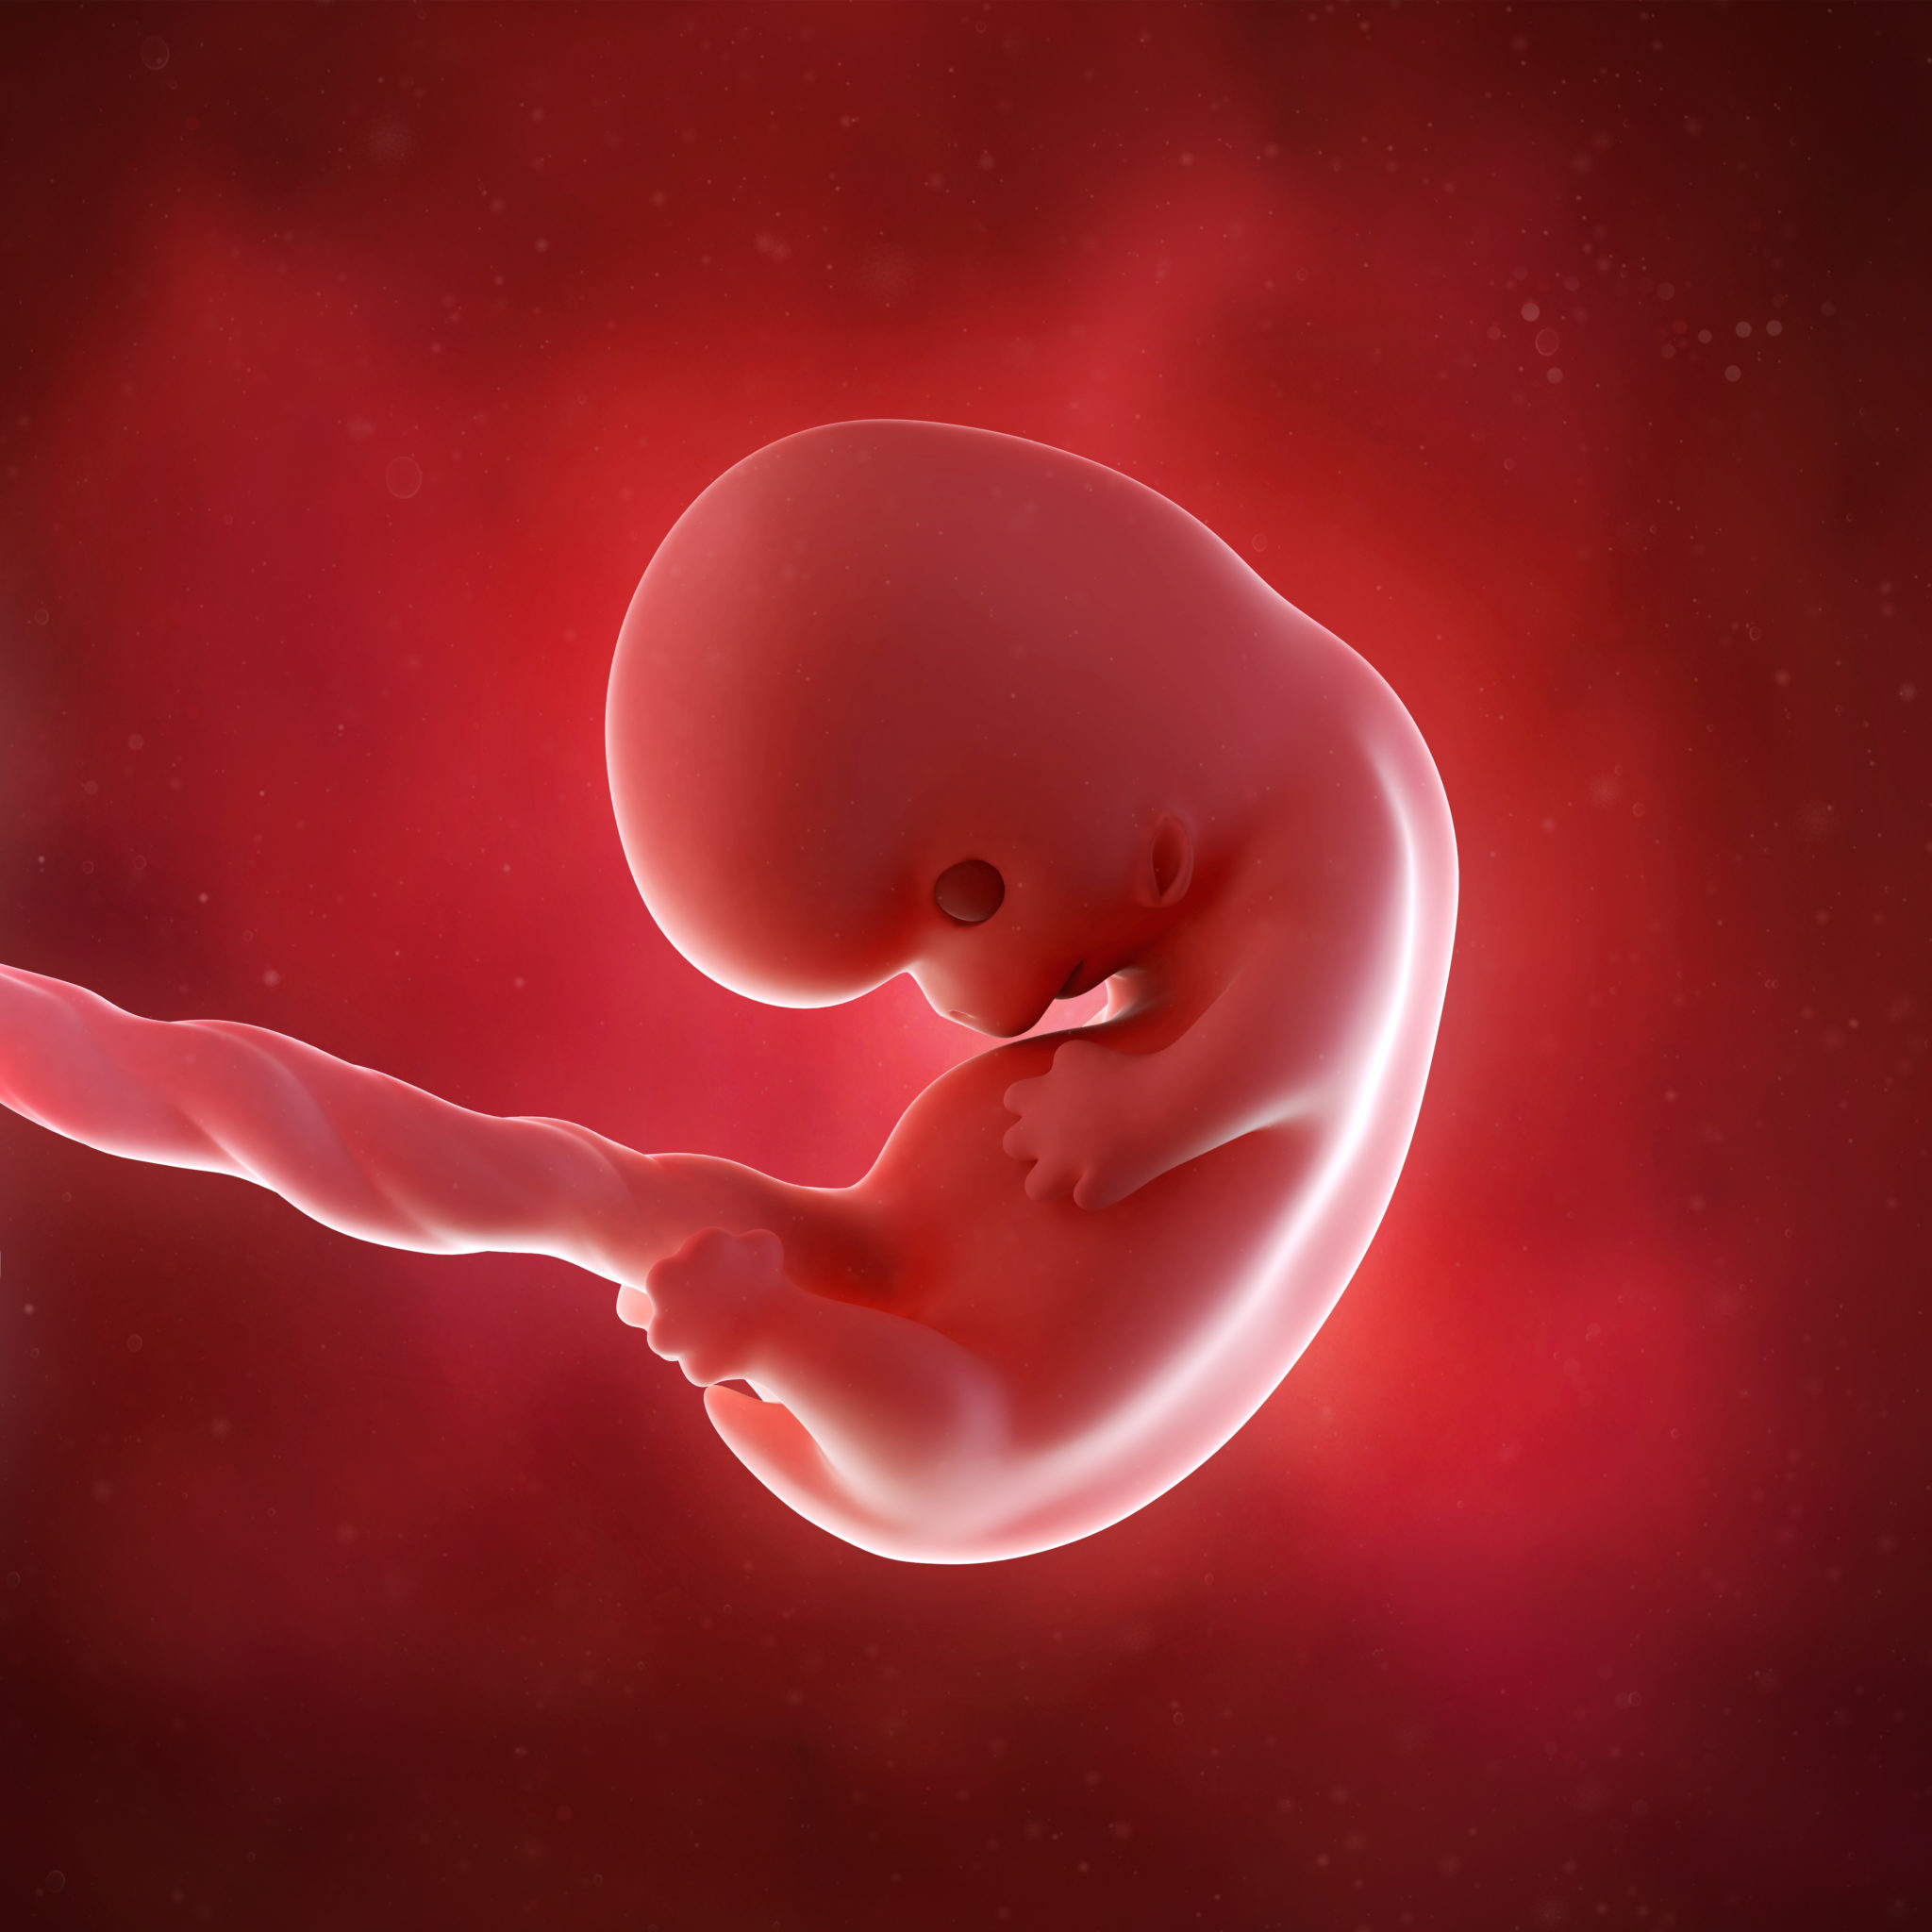 8 недель нет сердцебиения. Эмбрион на 8 неделе беременности. Зародыш 2-3 недели беременности.